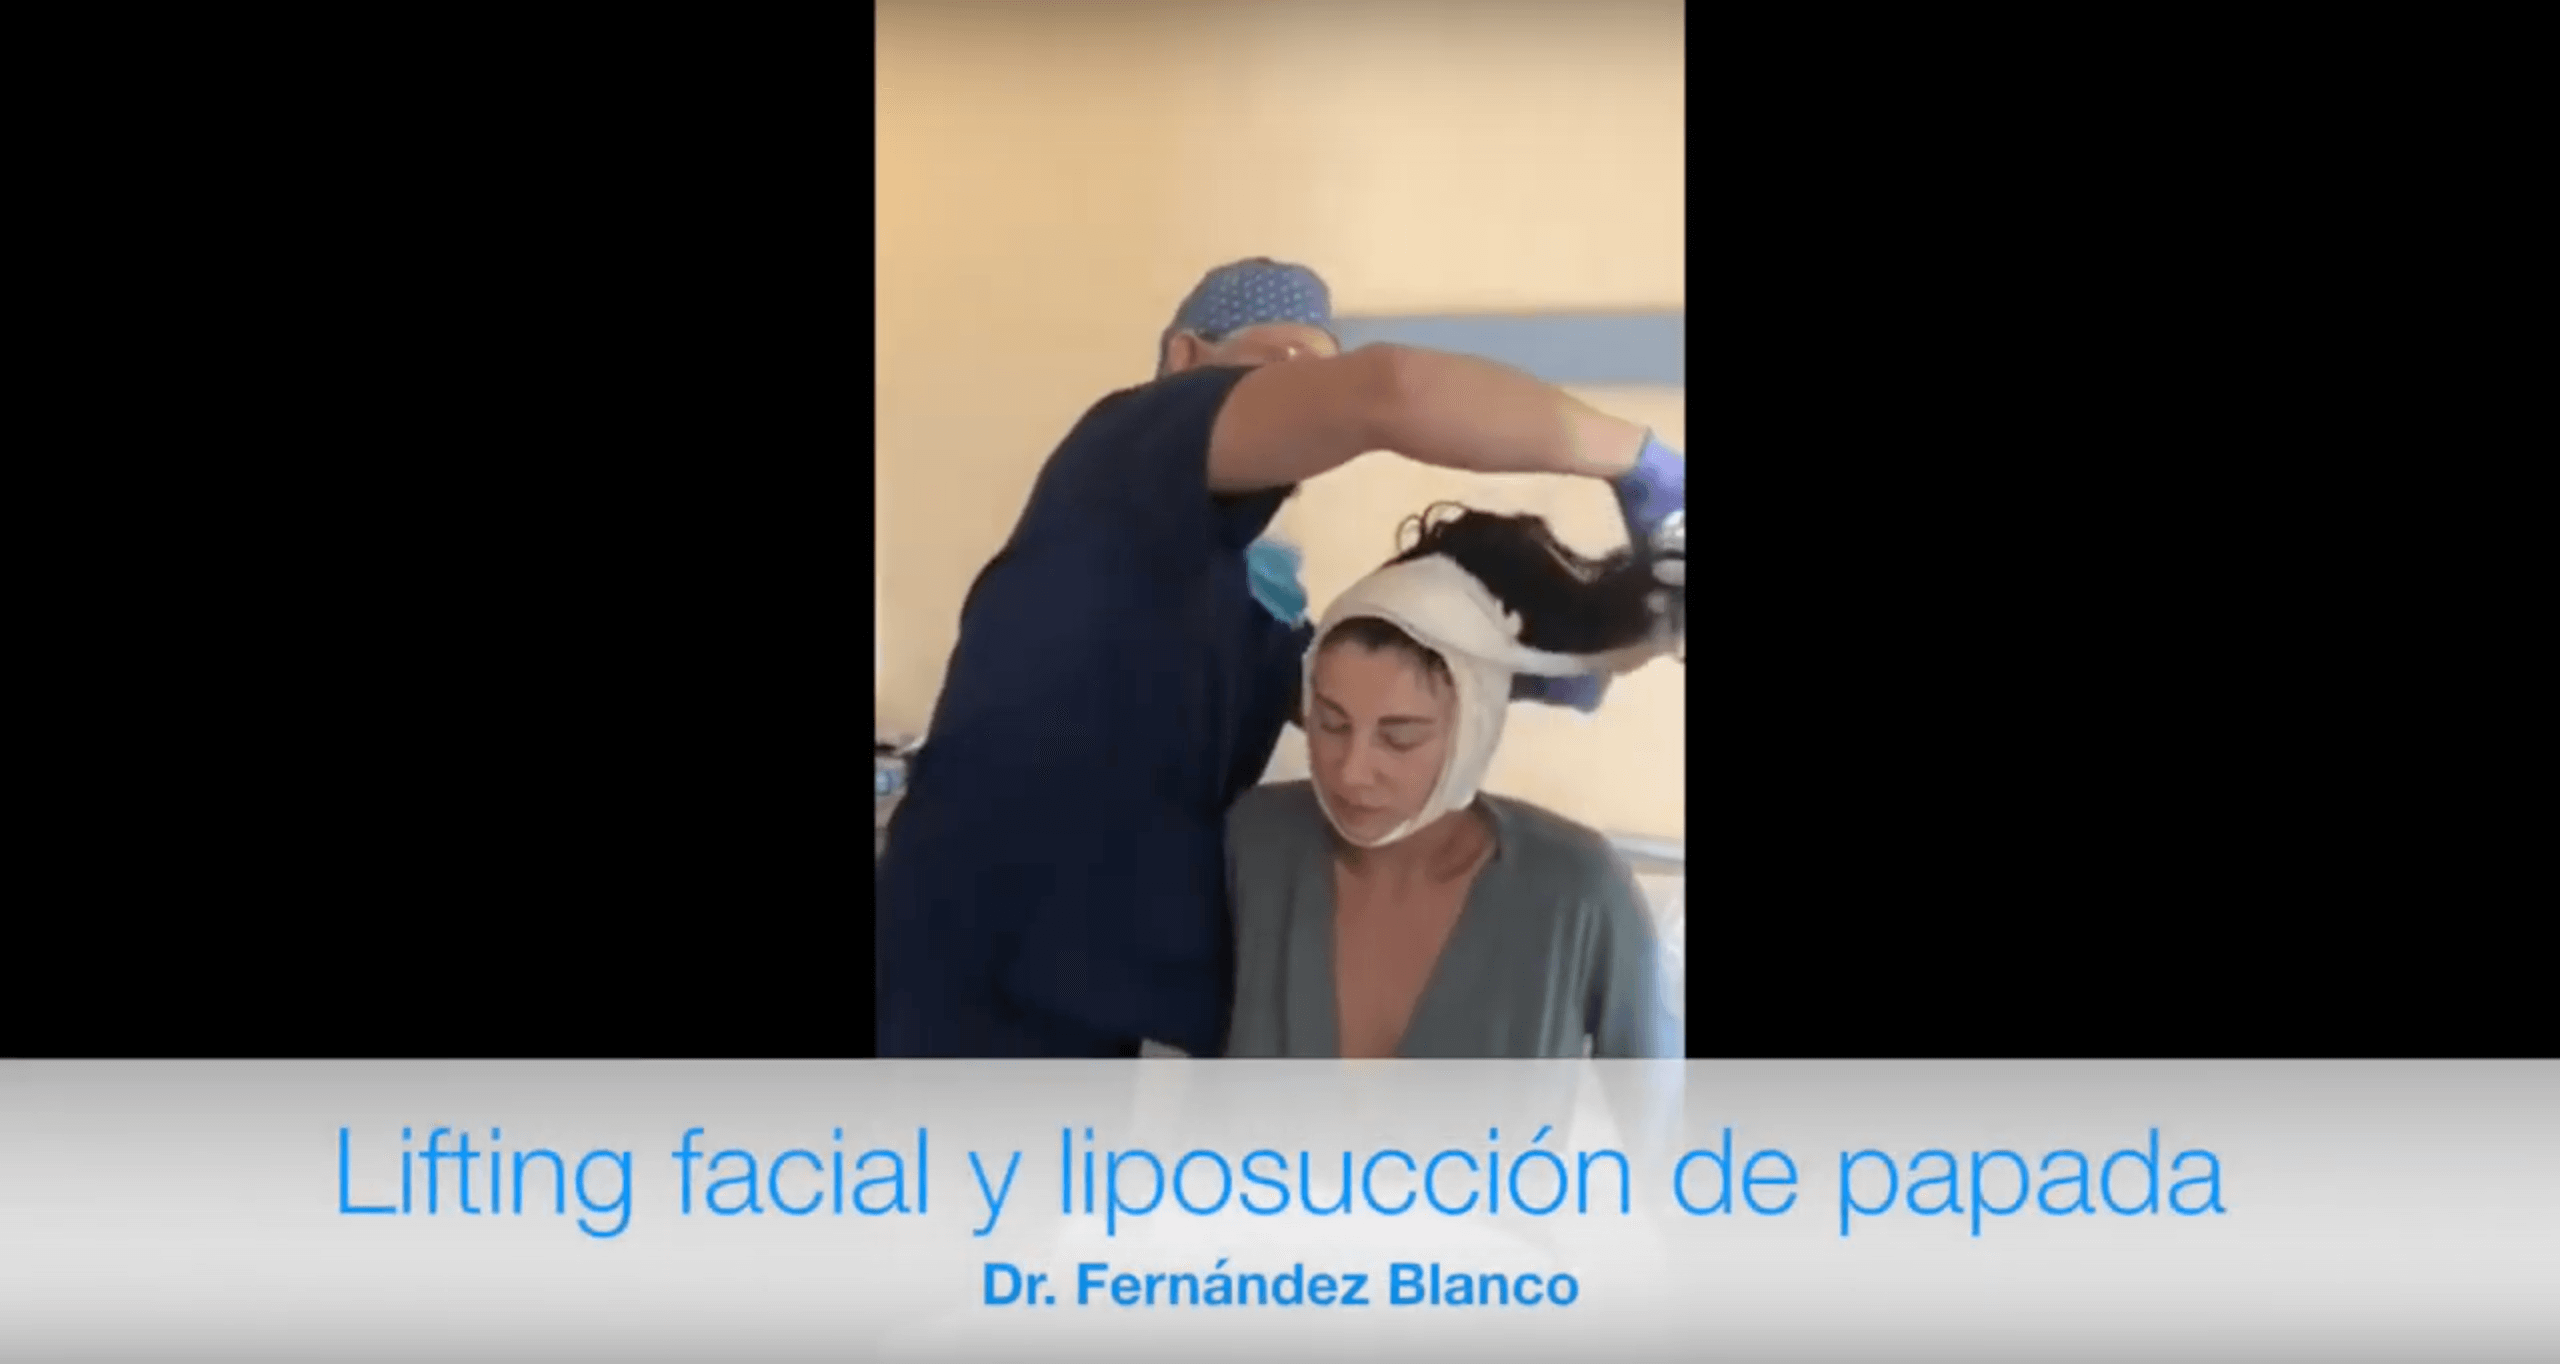 Video de cómo luce una paciente luego de una cirugía de lifting facial y liposucción de papada